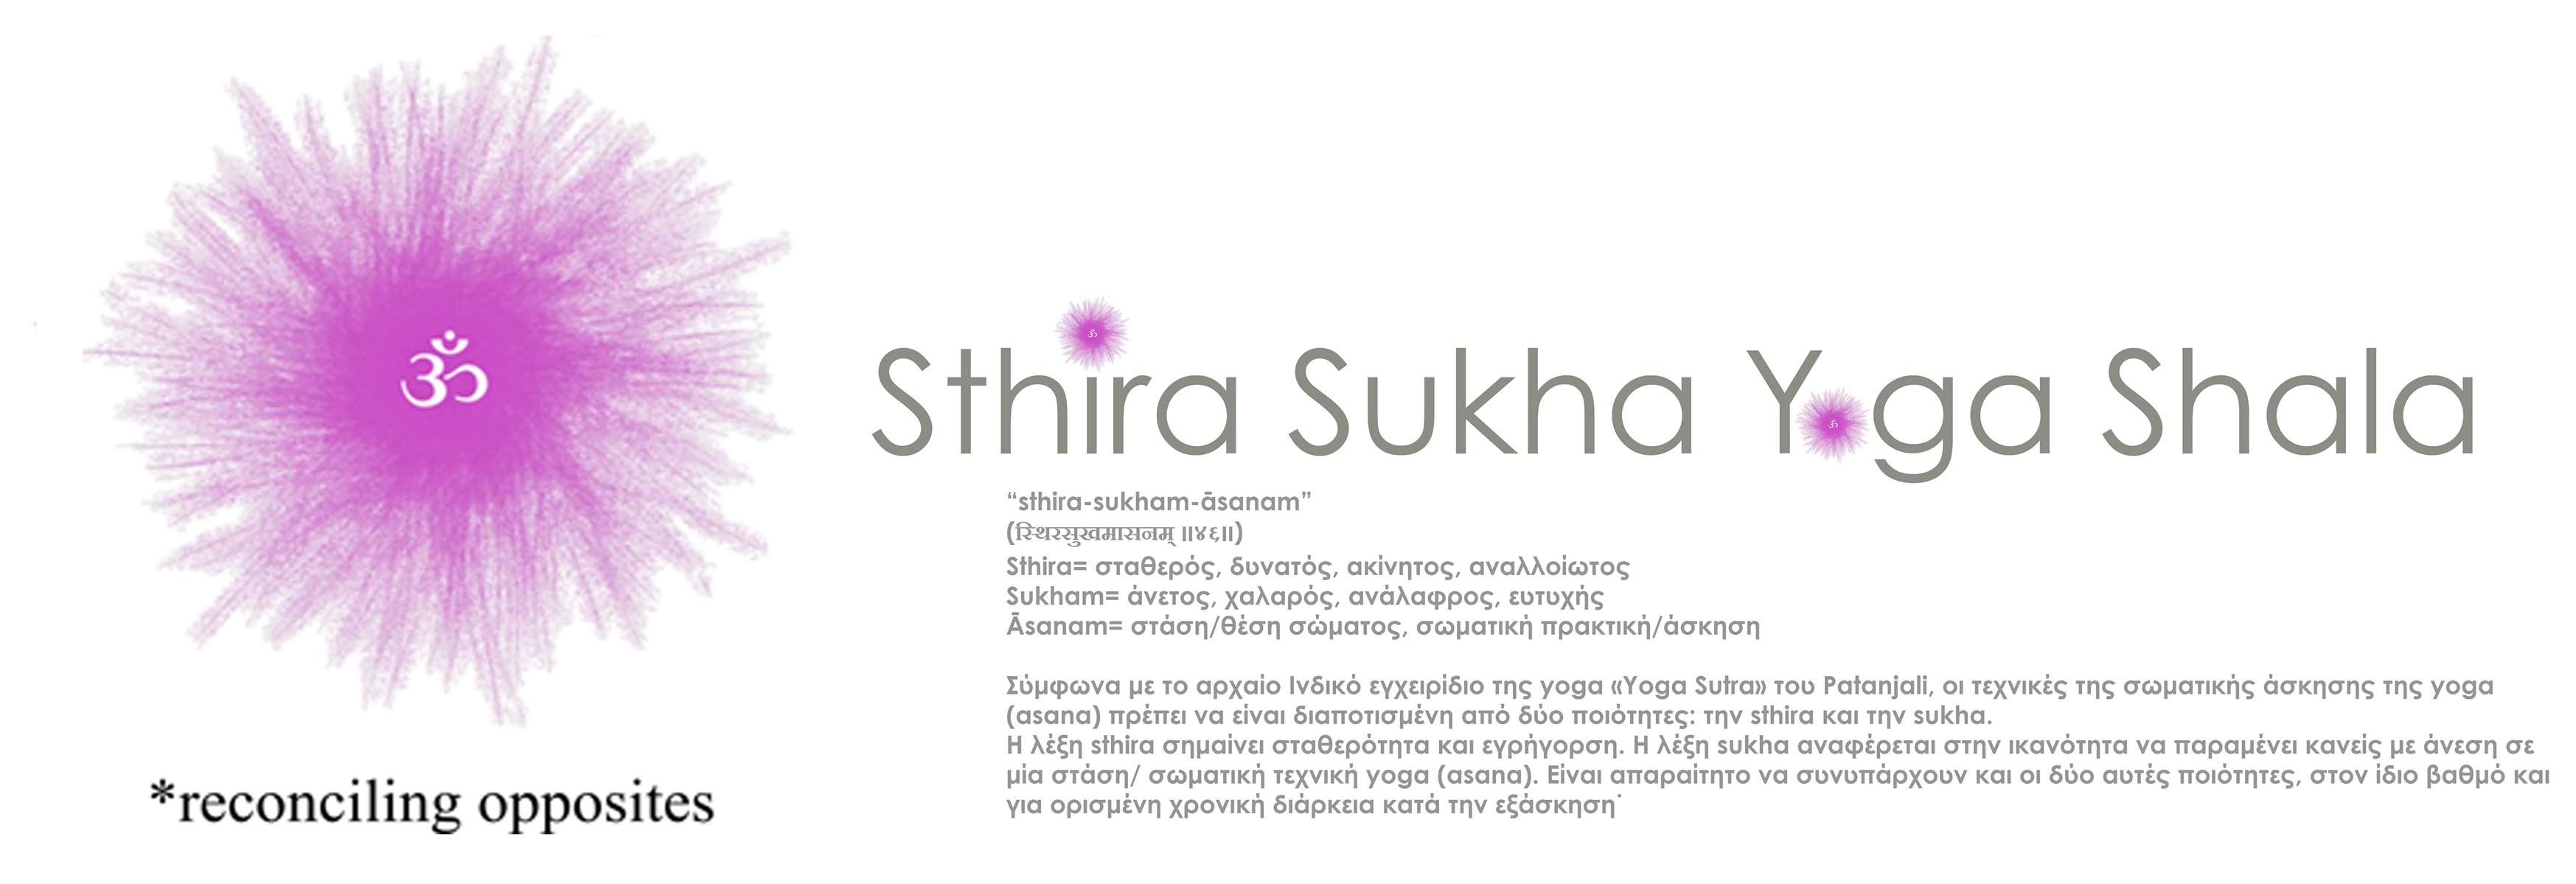 Sthira Sukha Yoga Shala Image